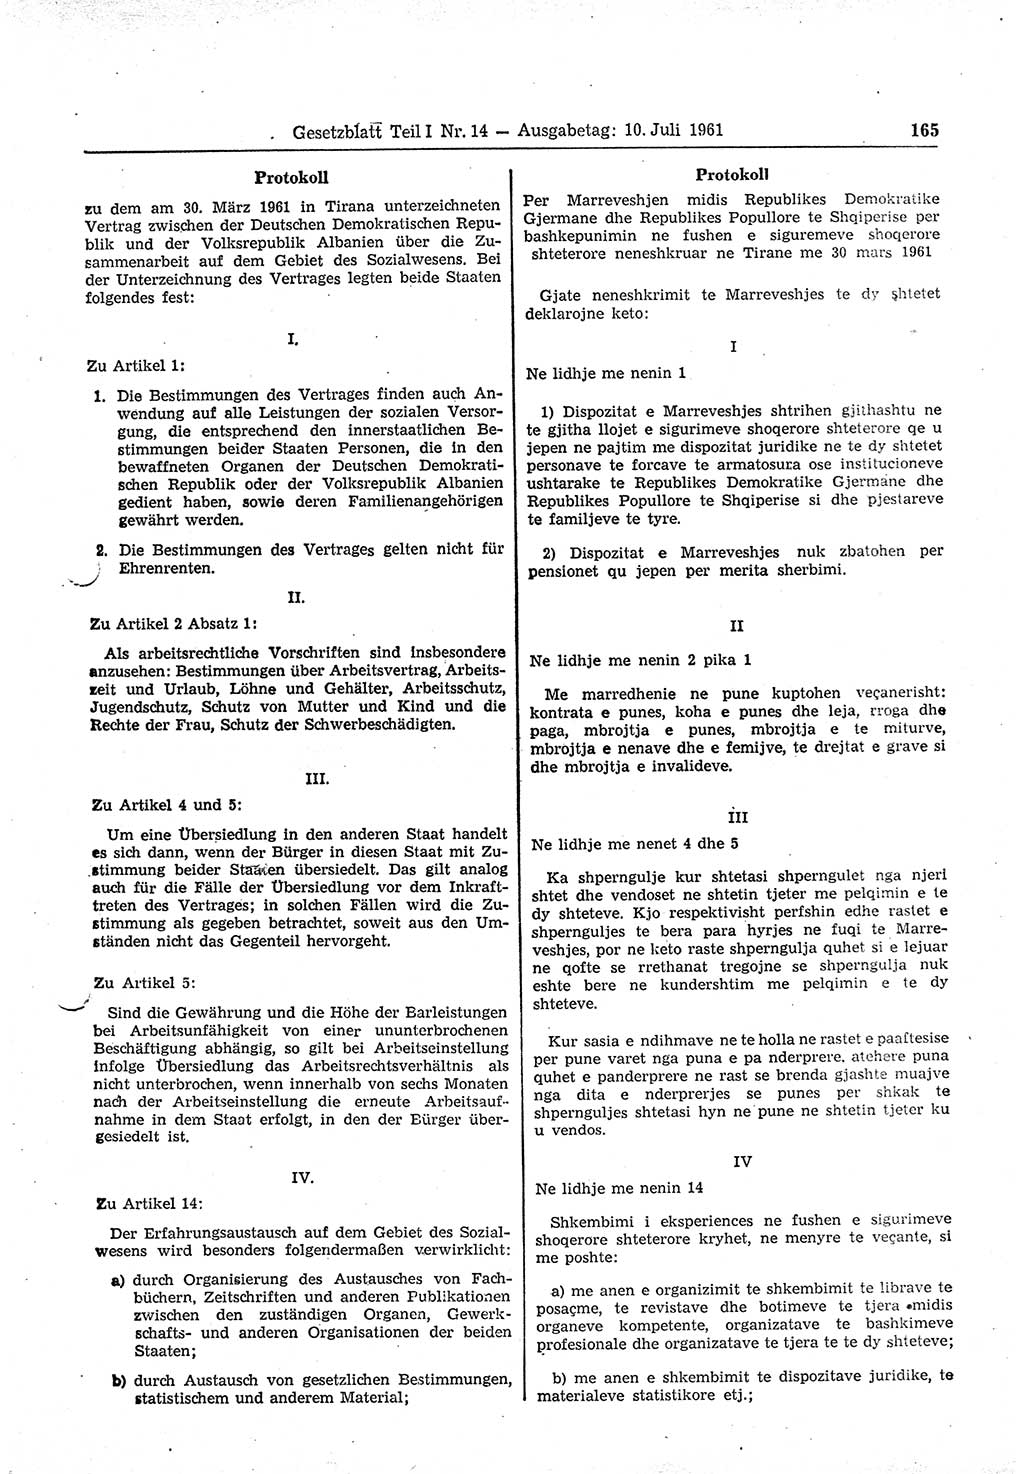 Gesetzblatt (GBl.) der Deutschen Demokratischen Republik (DDR) Teil Ⅰ 1961, Seite 165 (GBl. DDR Ⅰ 1961, S. 165)